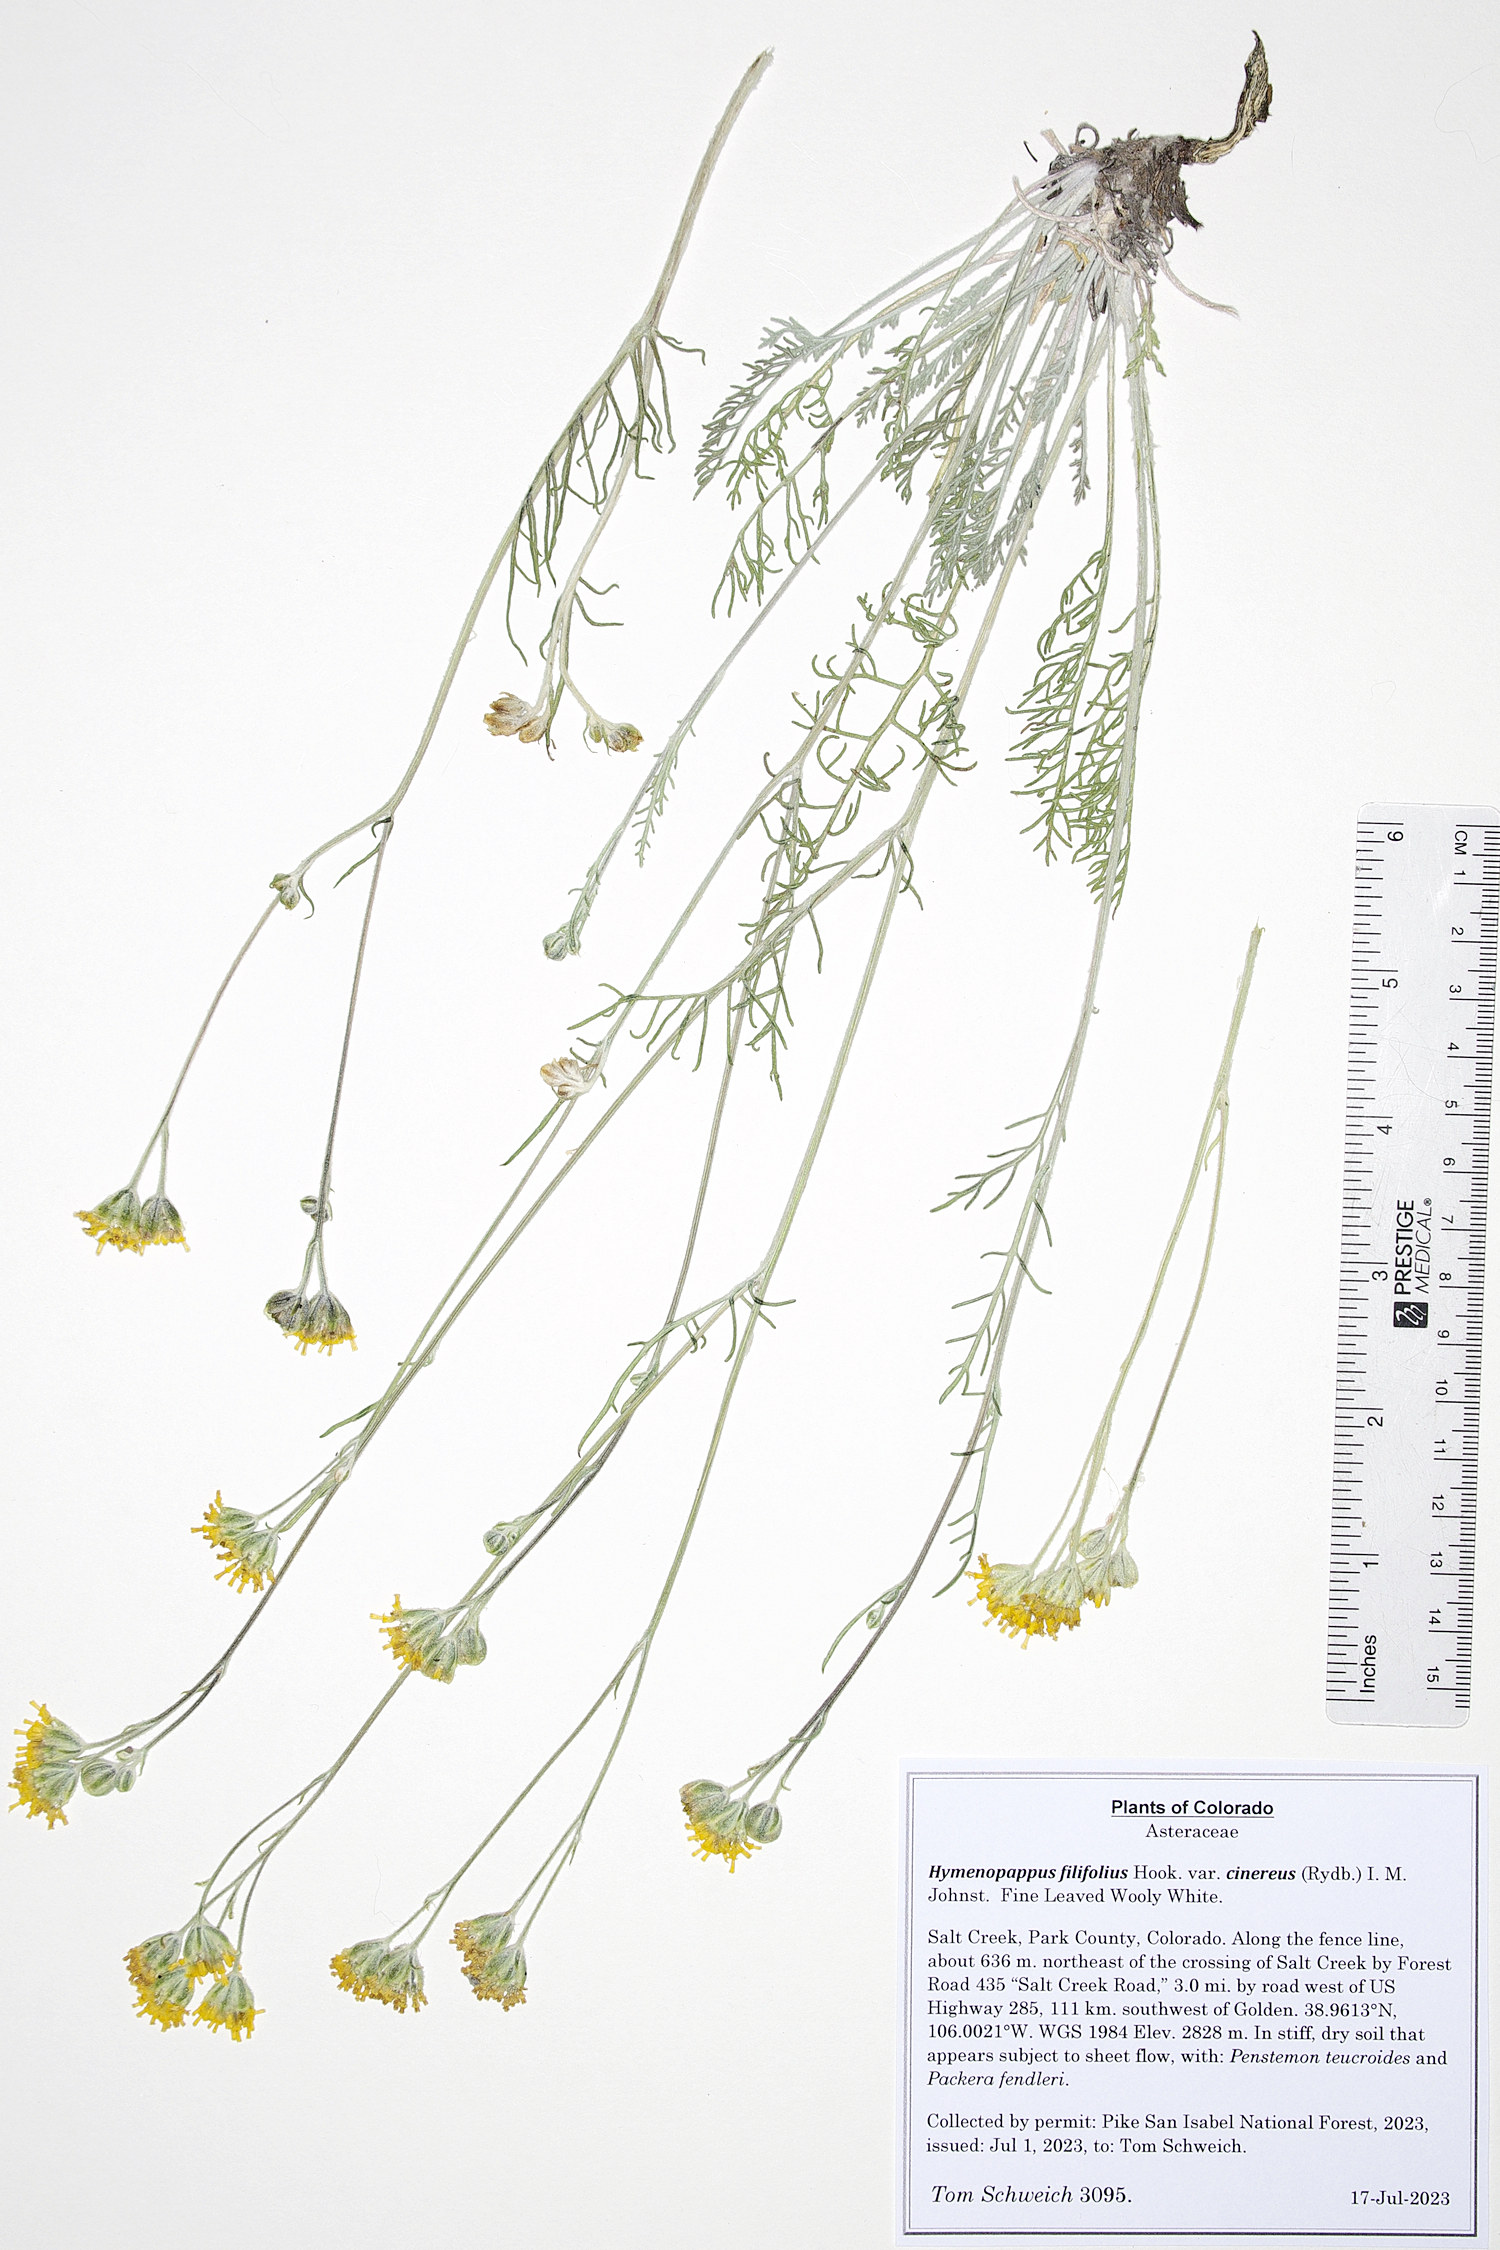 Asteraceae Hymenopappus filifolius cinereus